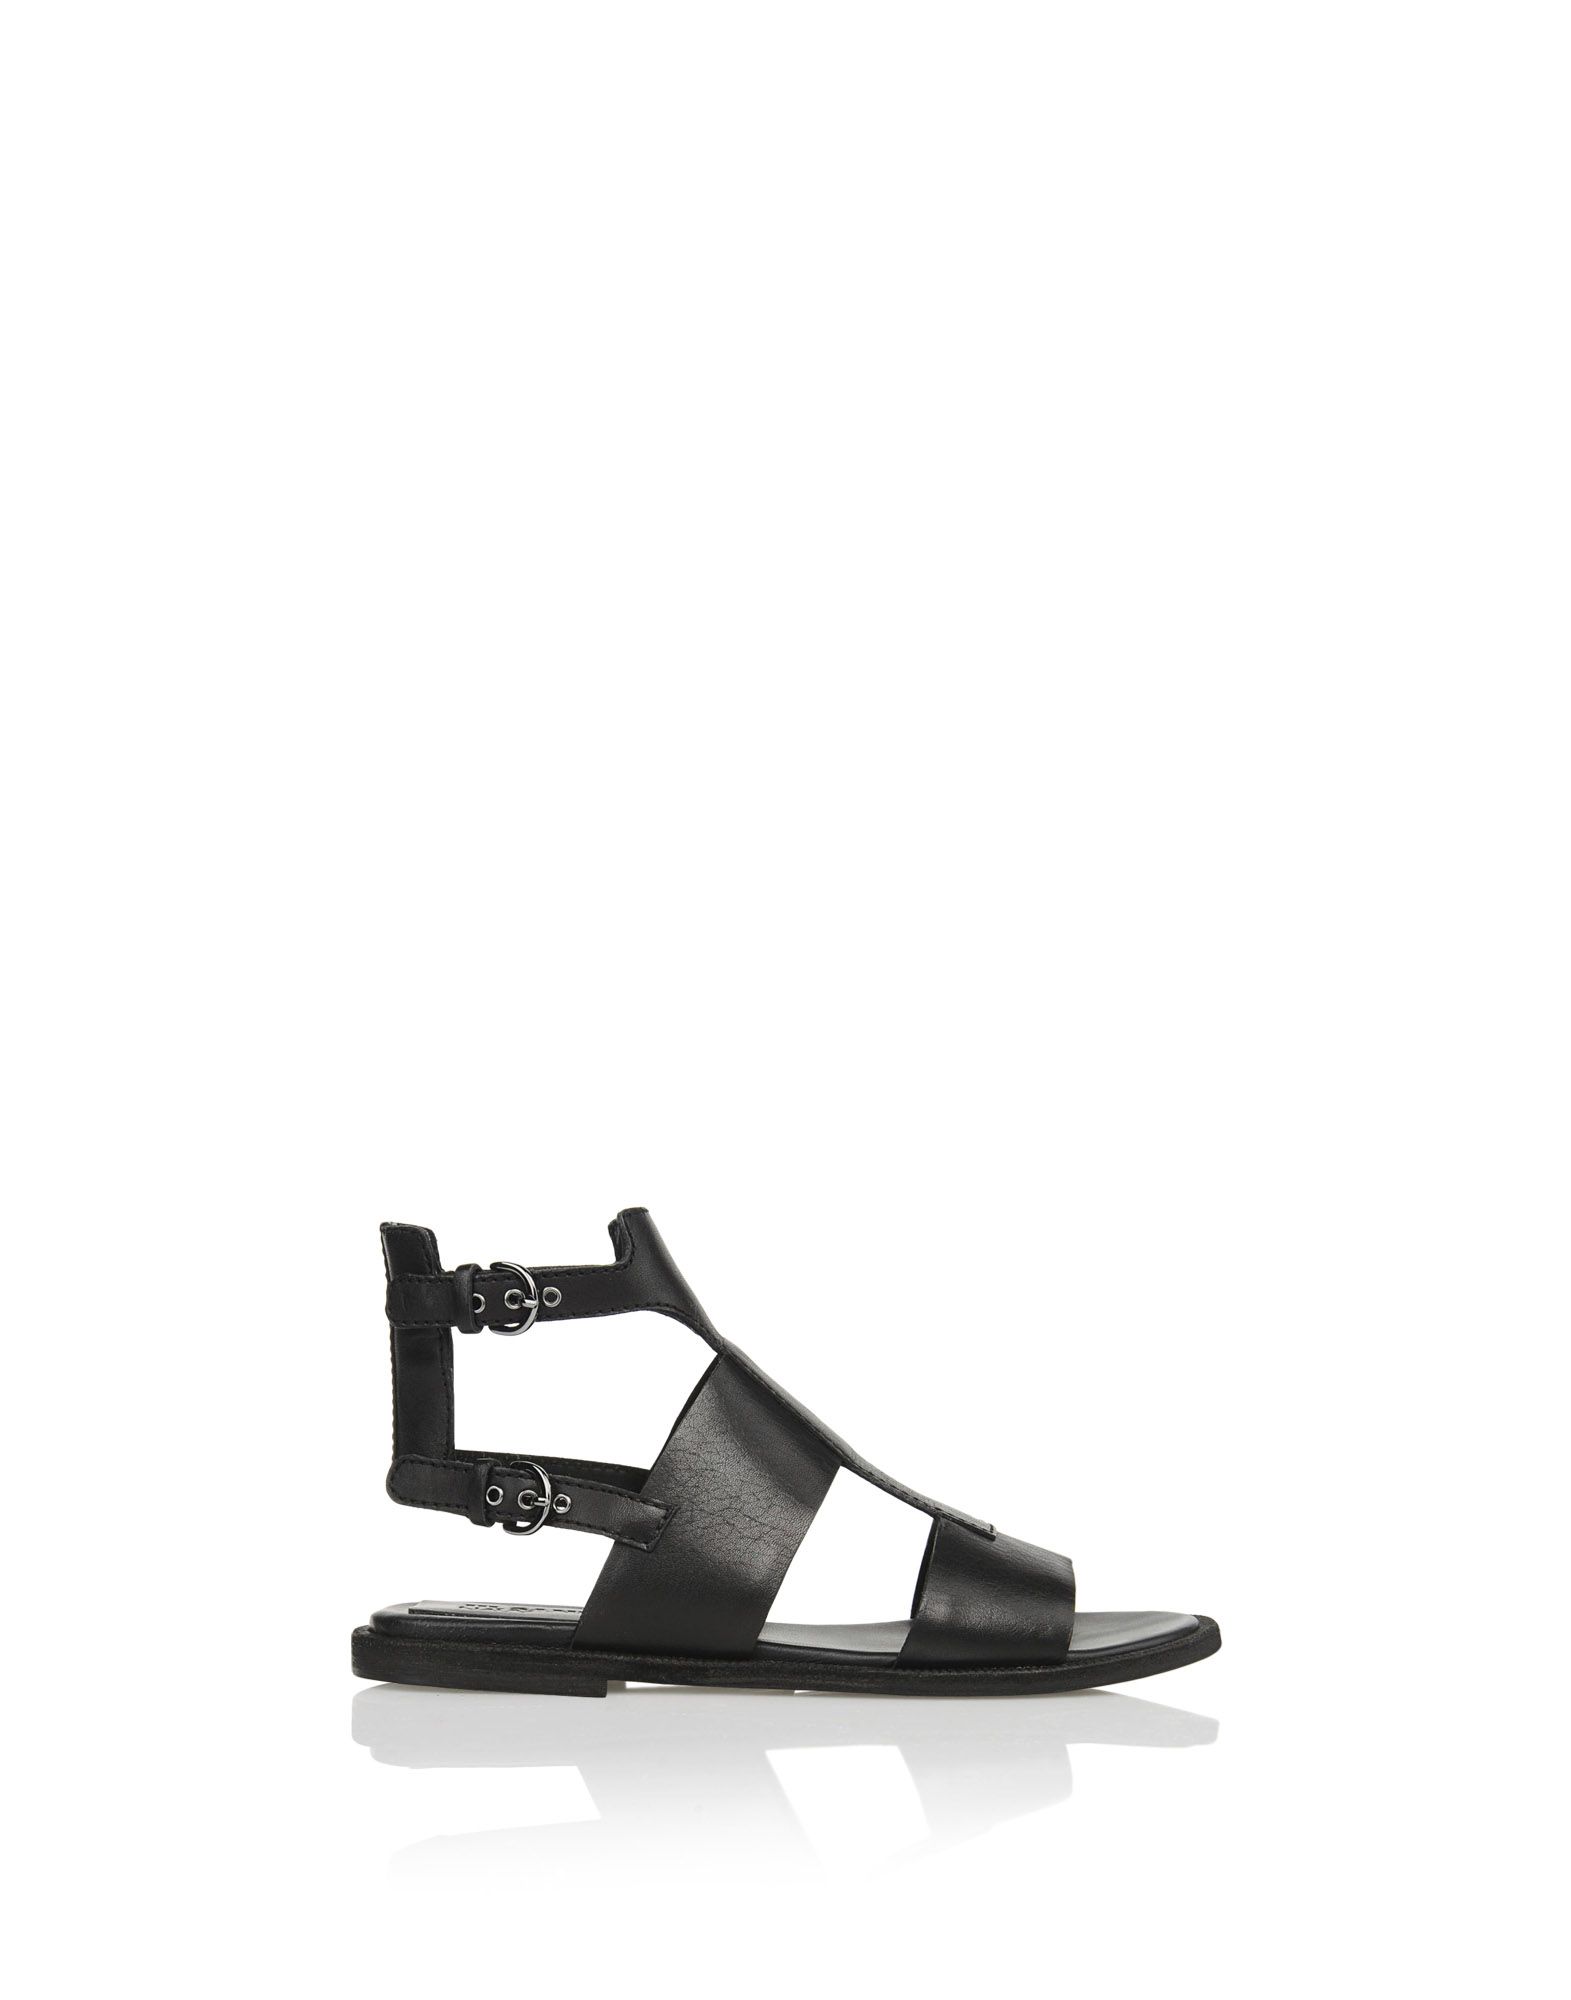 Sandals Women - Shoes Women on Jil Sander Online Store